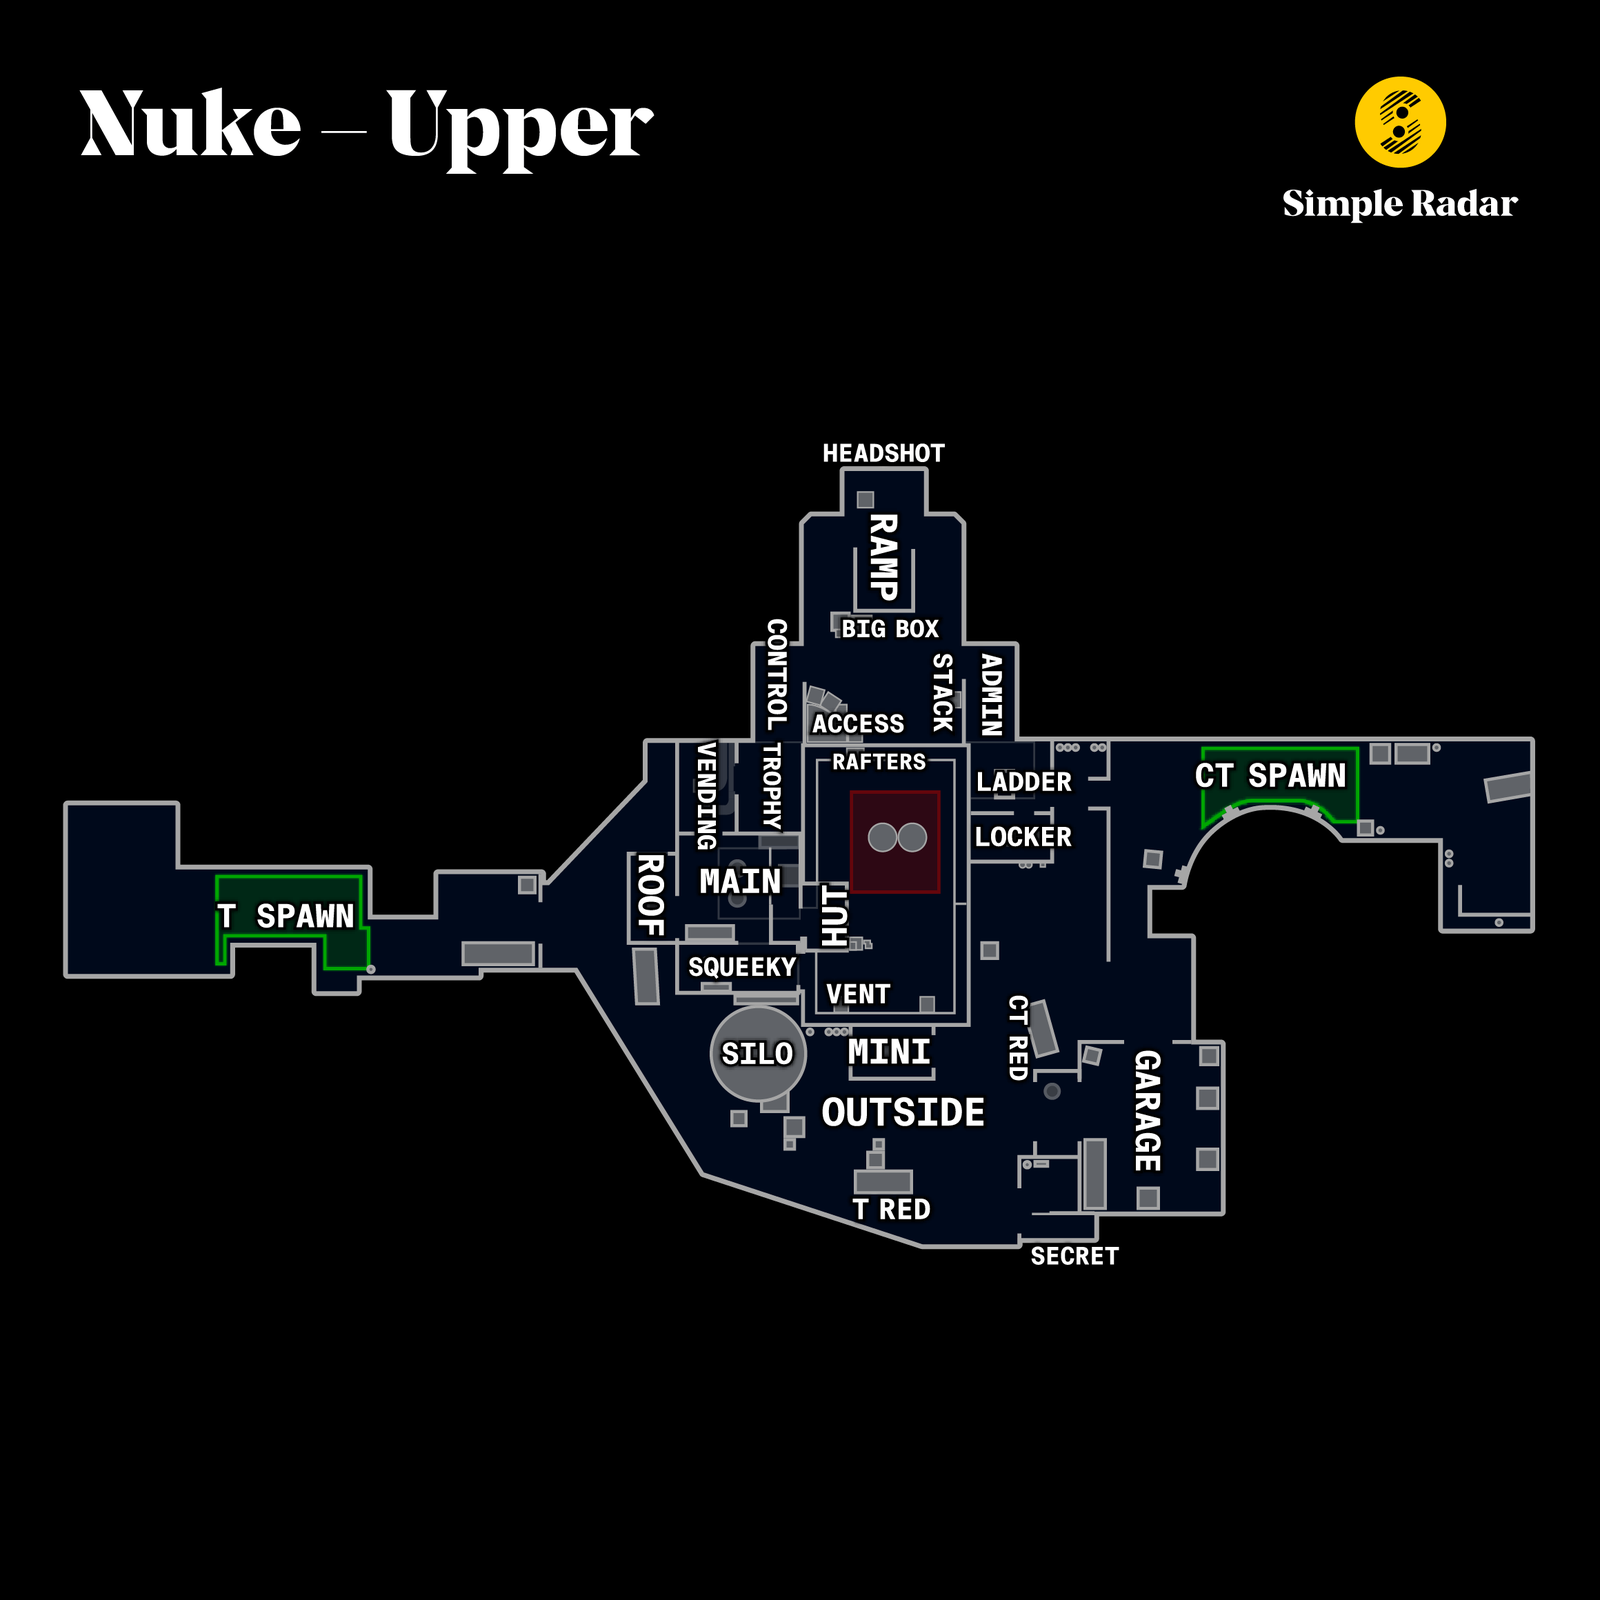 Nuke upper